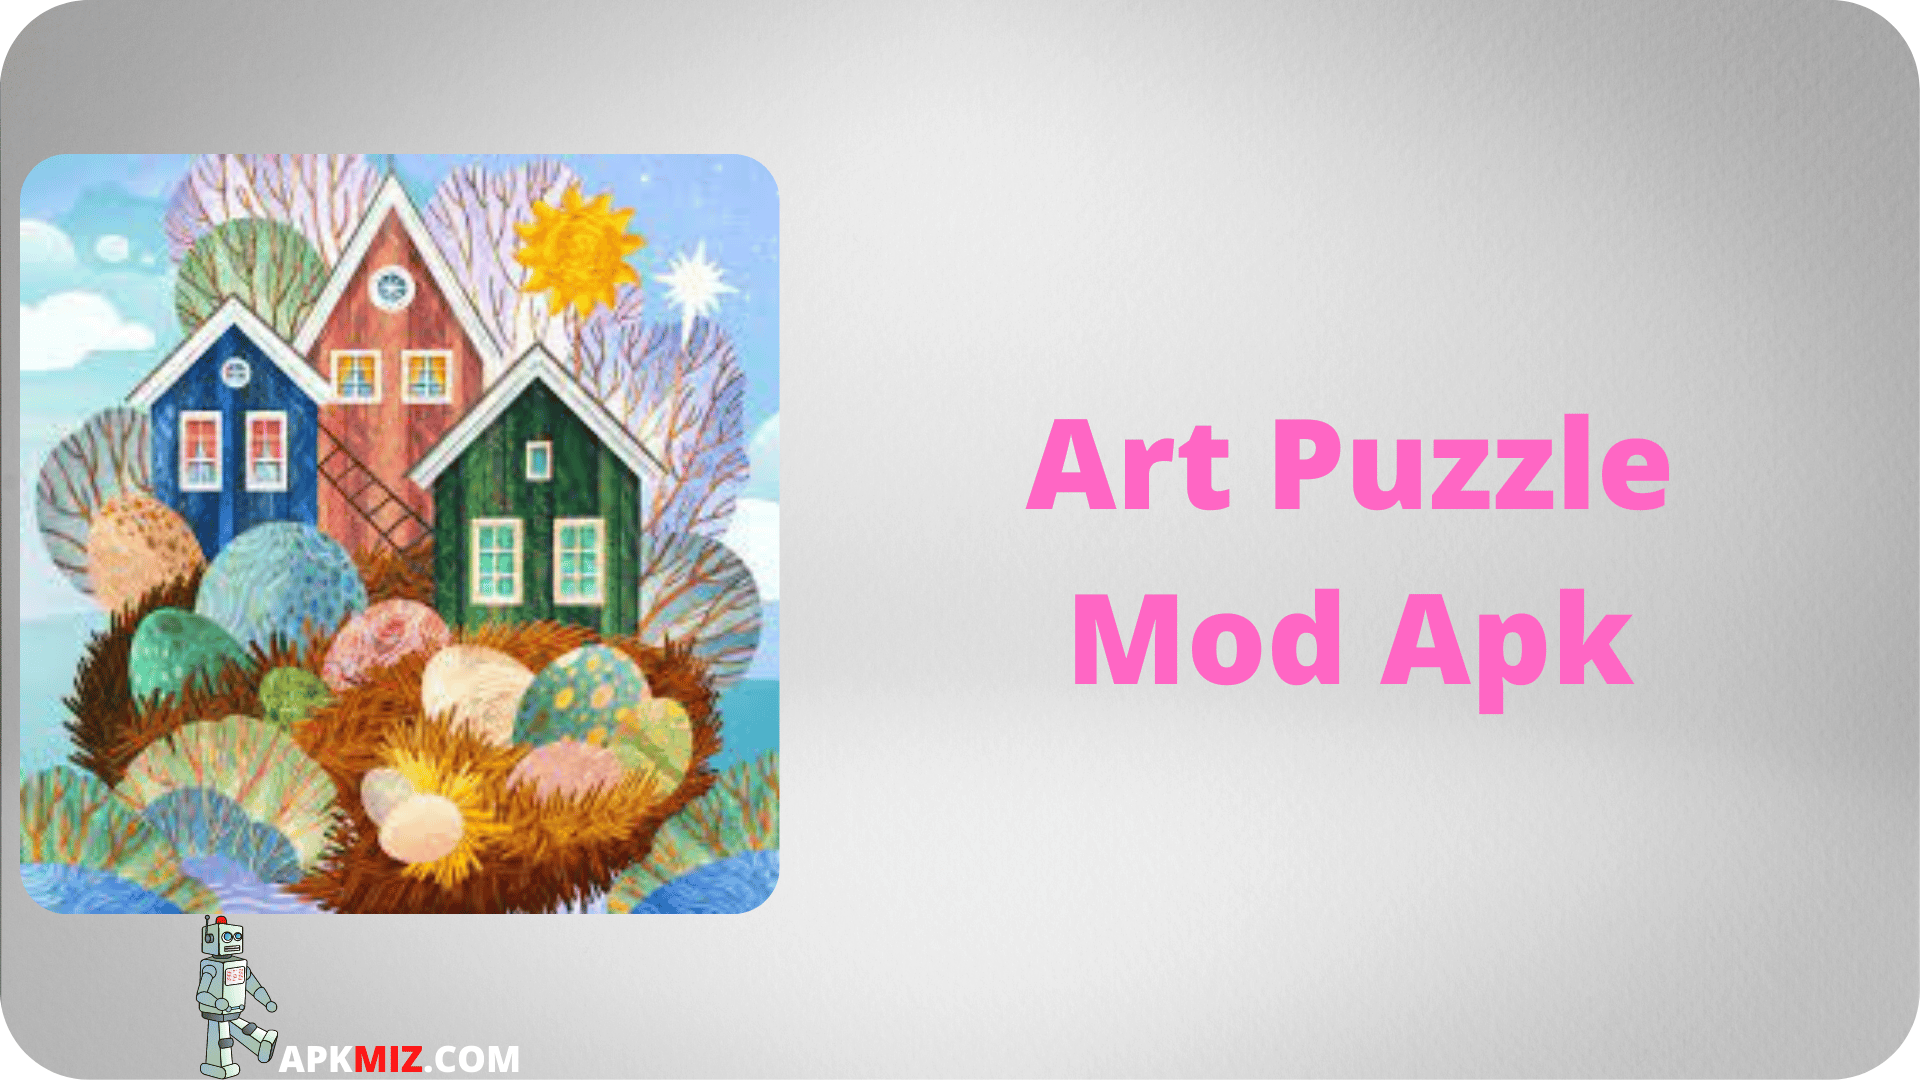 Art Puzzle Mod Apk